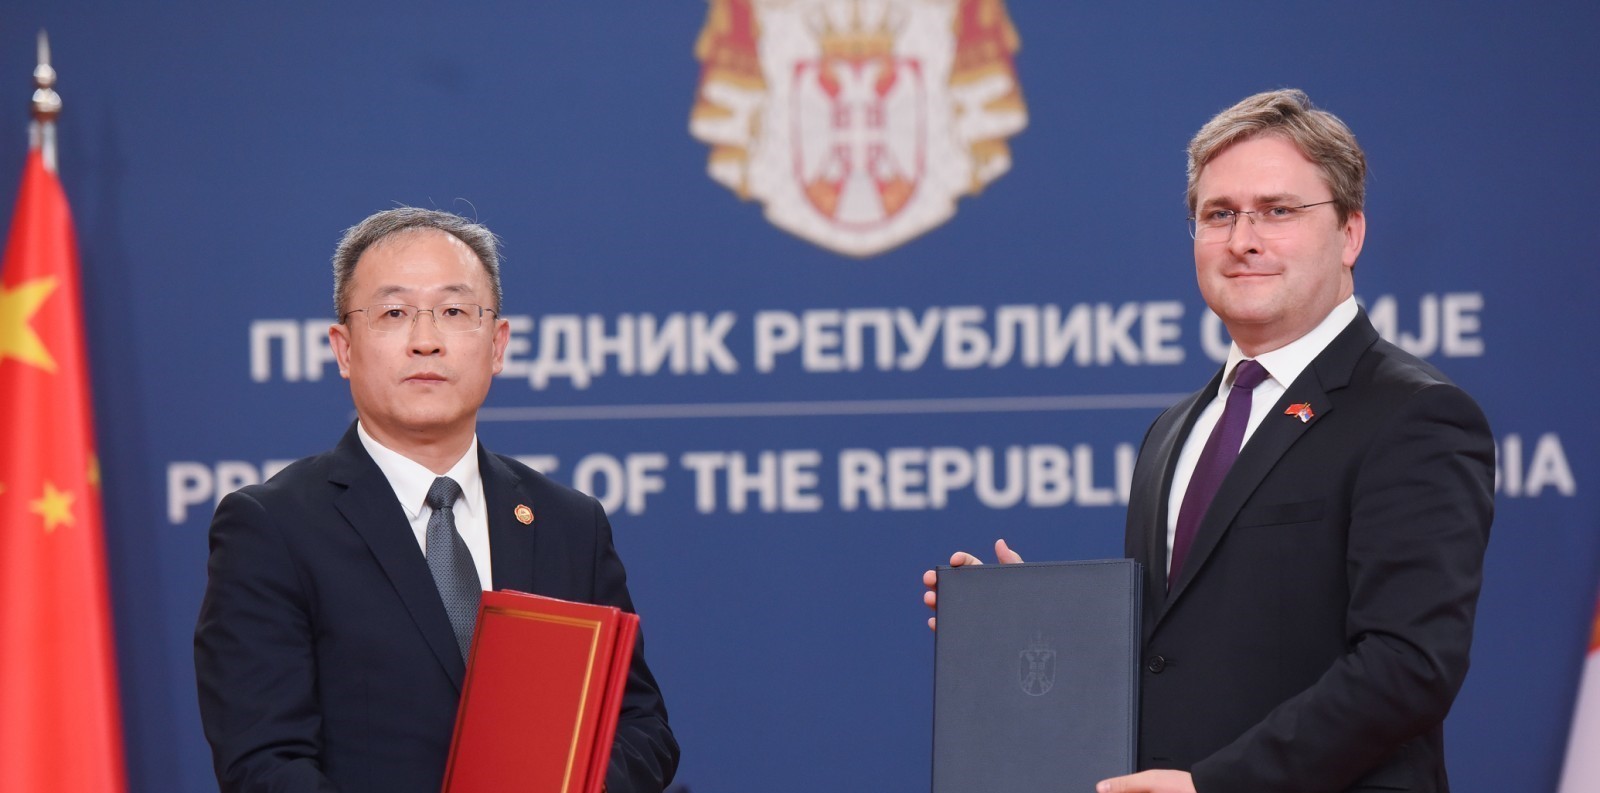 Selaković tokom posete predsednika NR Kine potpisao tri dokumenta u cilju osnaživanja kulturne saradnje